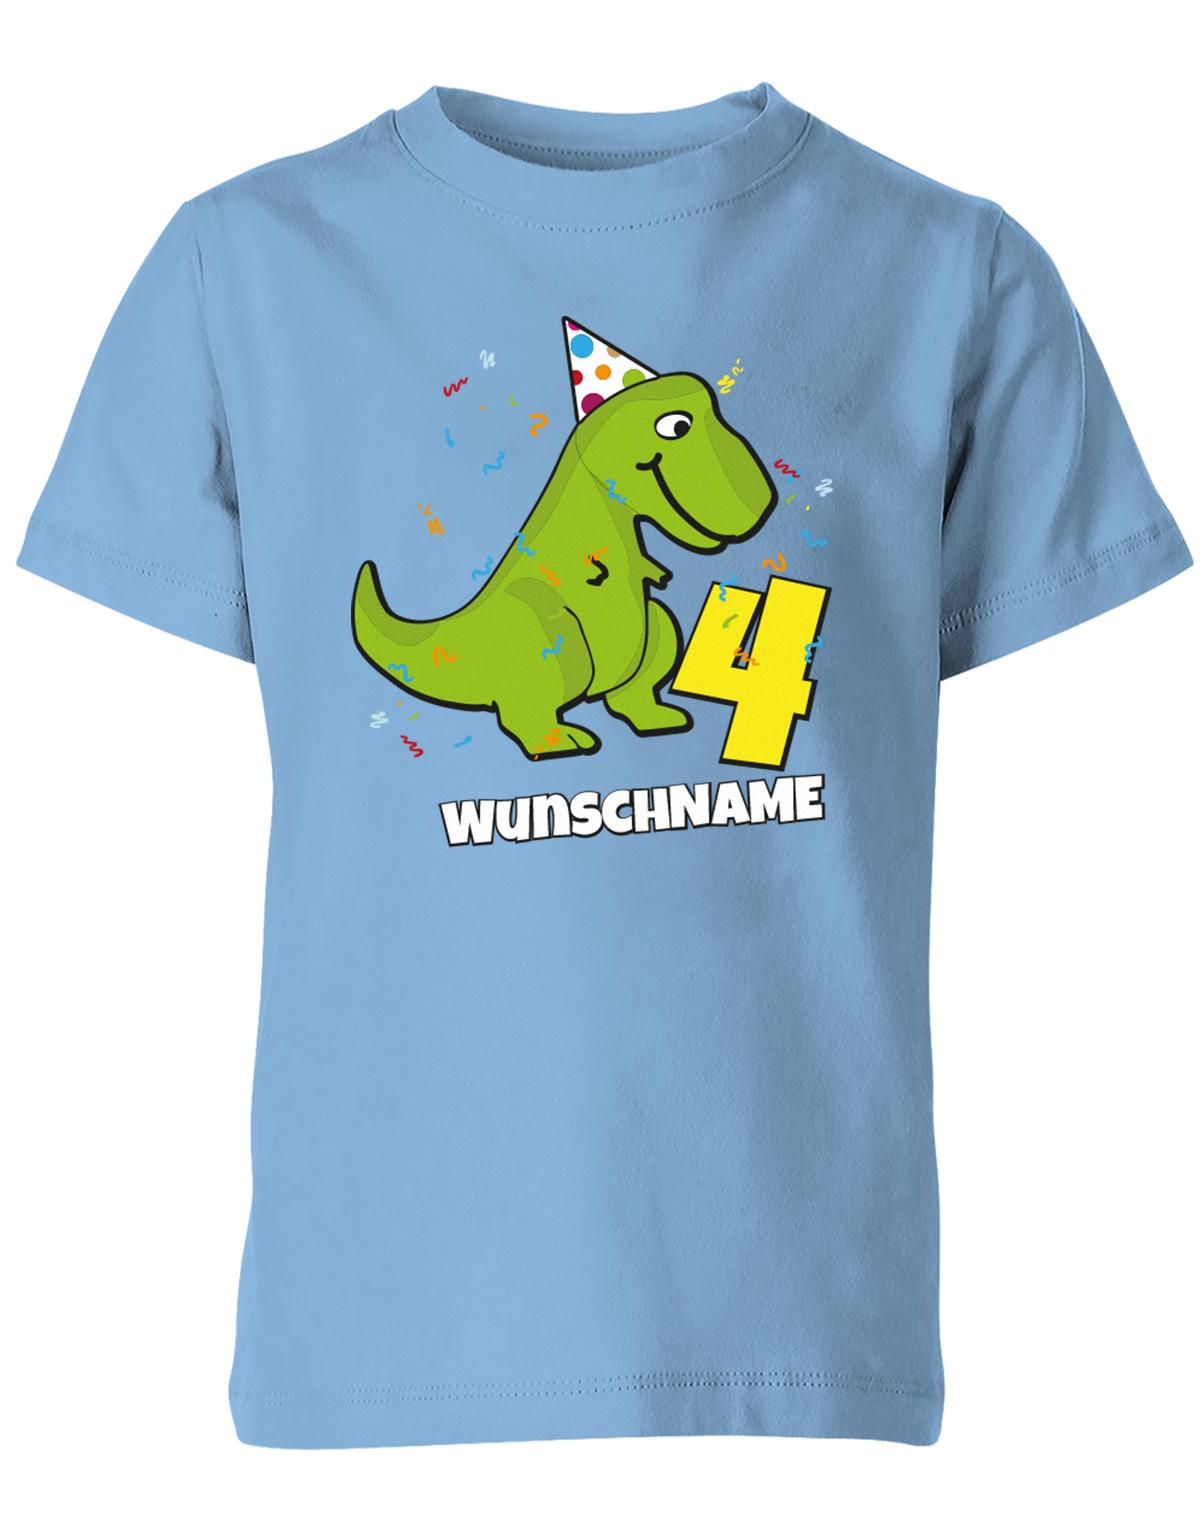 ich-bin-4-Dinosaurier-t-rex-wunschname-geburtstag-kinder-shirt-hellblau